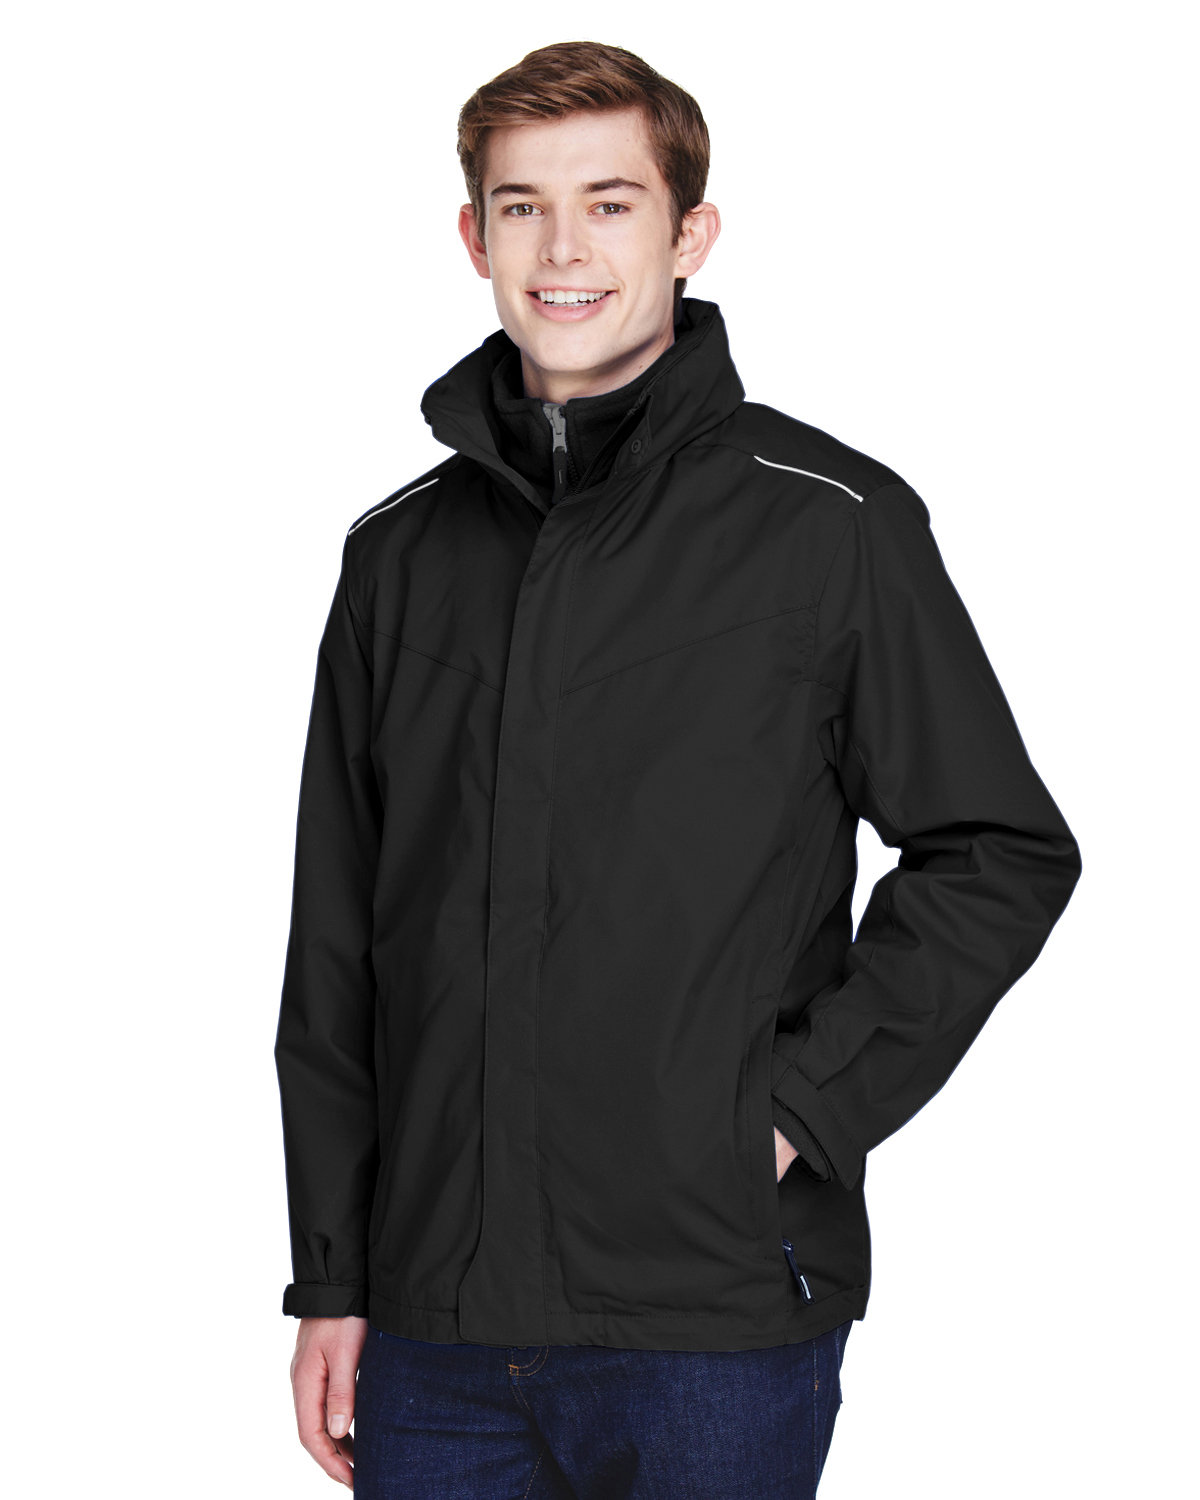 Core365 Men's Region 3-in-1 Jacket with Fleece Liner | alphabroder Canada